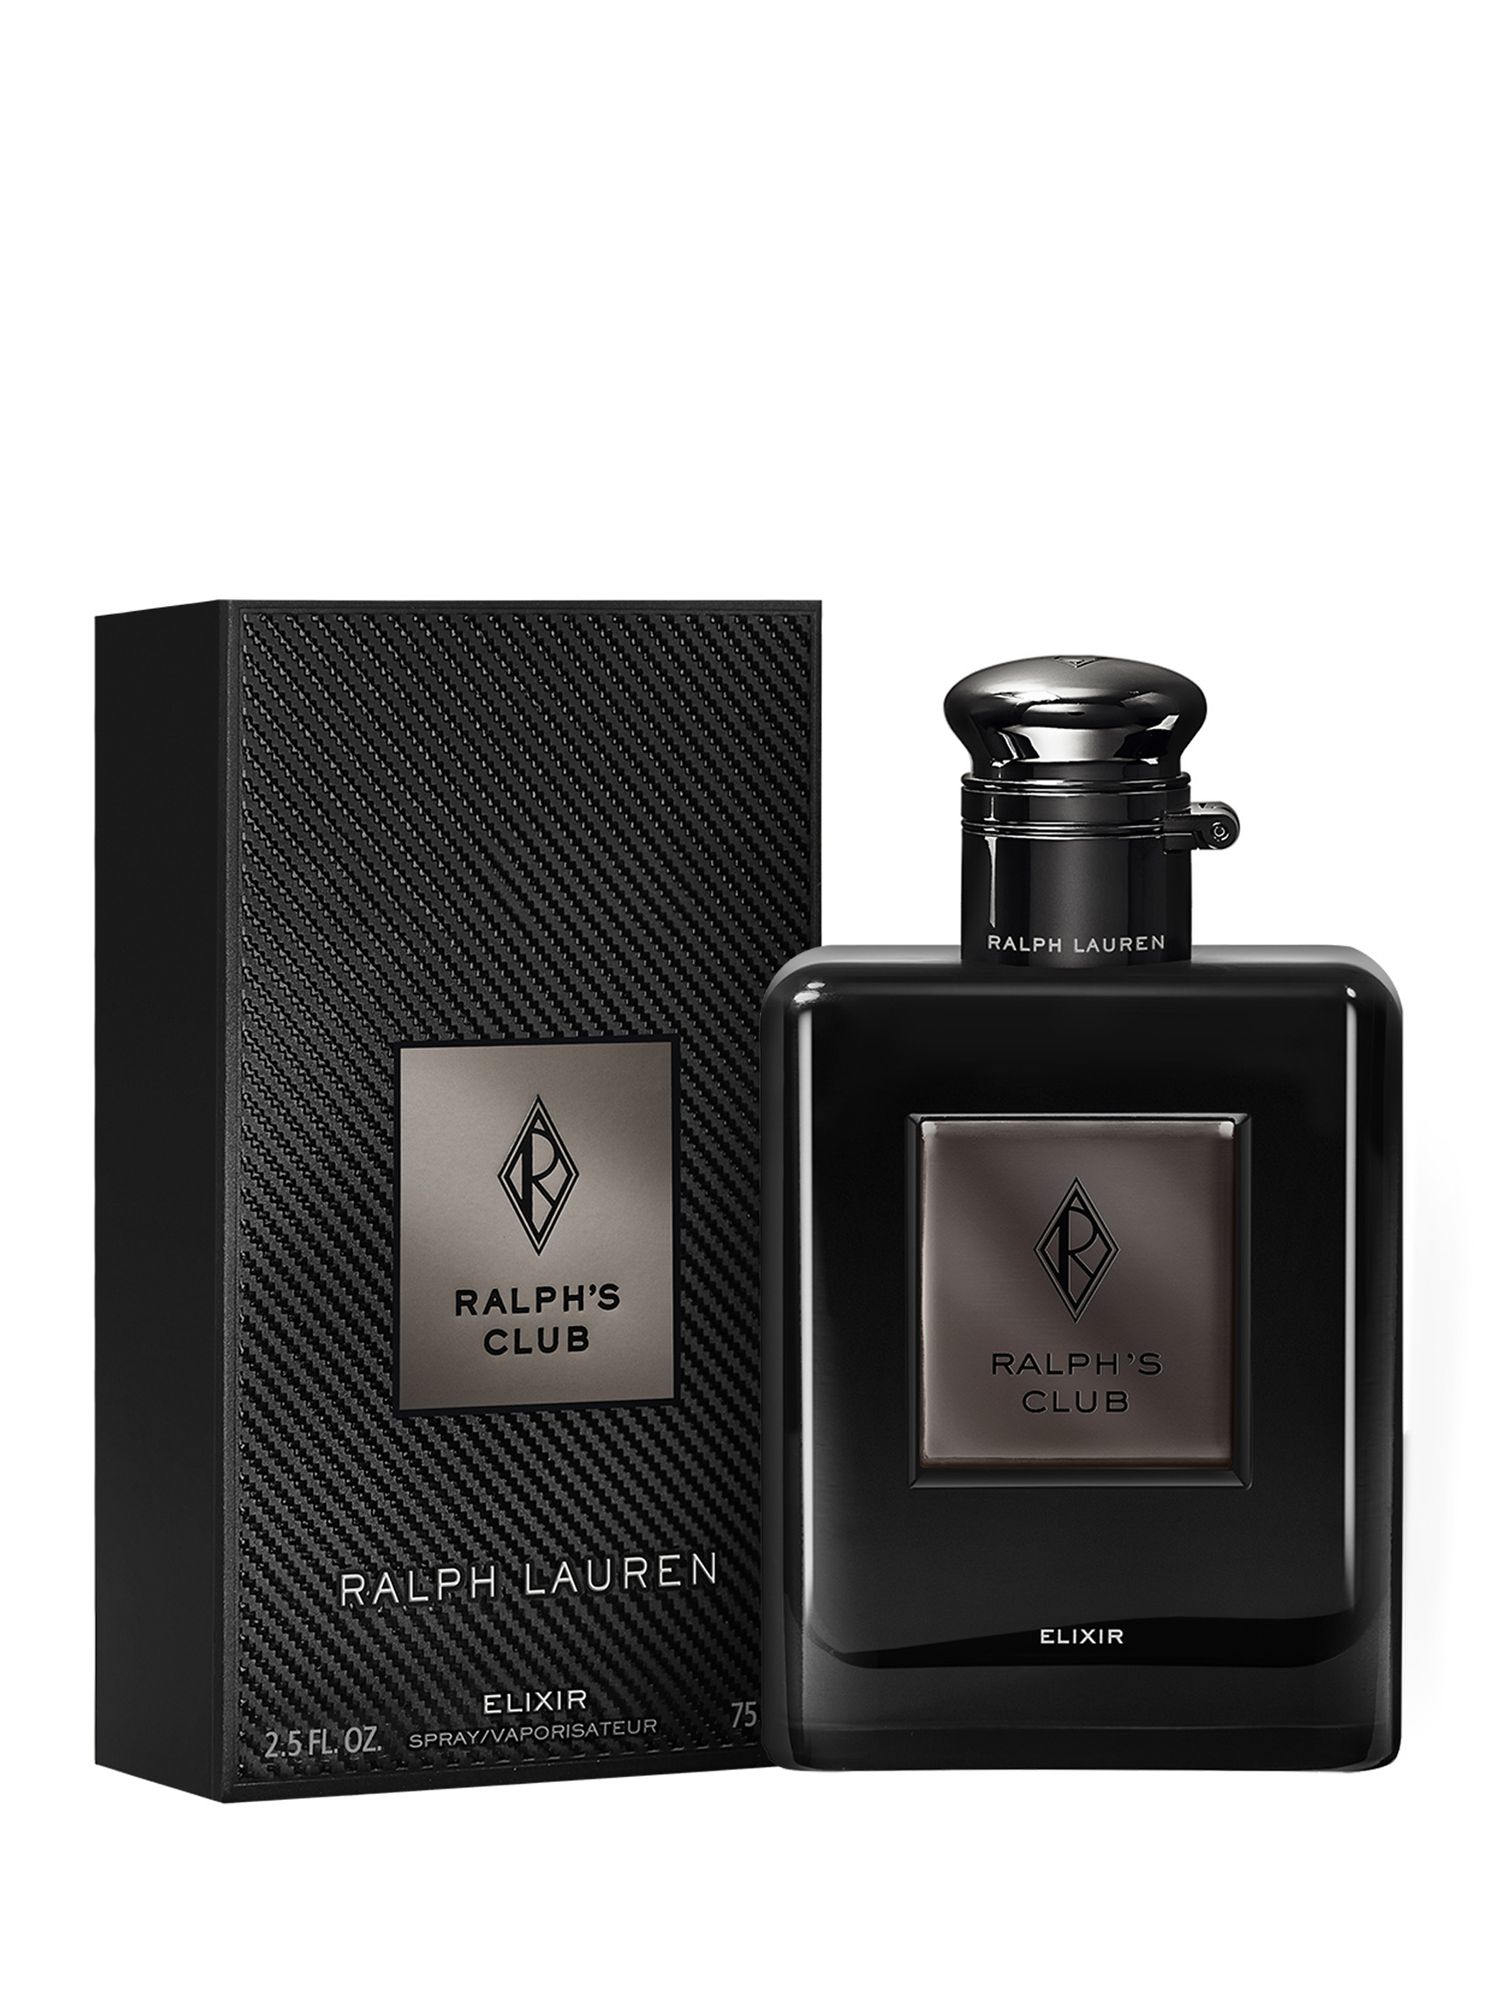 Ralph Lauren Ralphs Club Elixir Eau de Parfum, 75ml 2